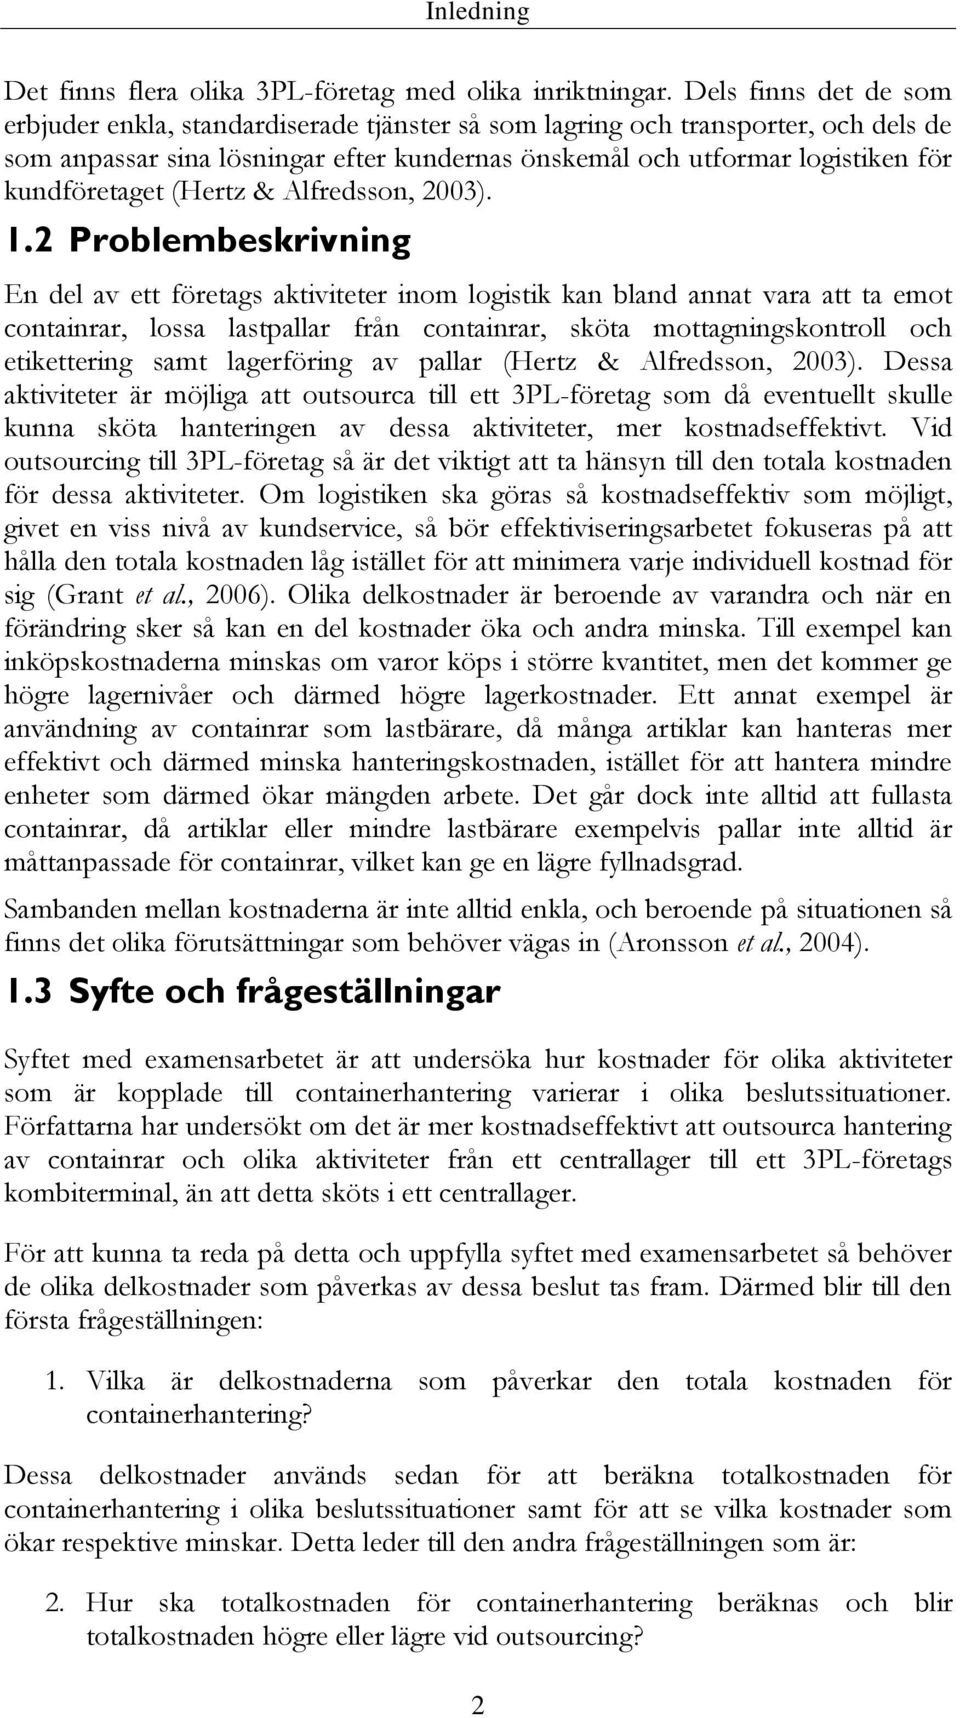 kundföretaget (Hertz & Alfredsson, 2003). 1.